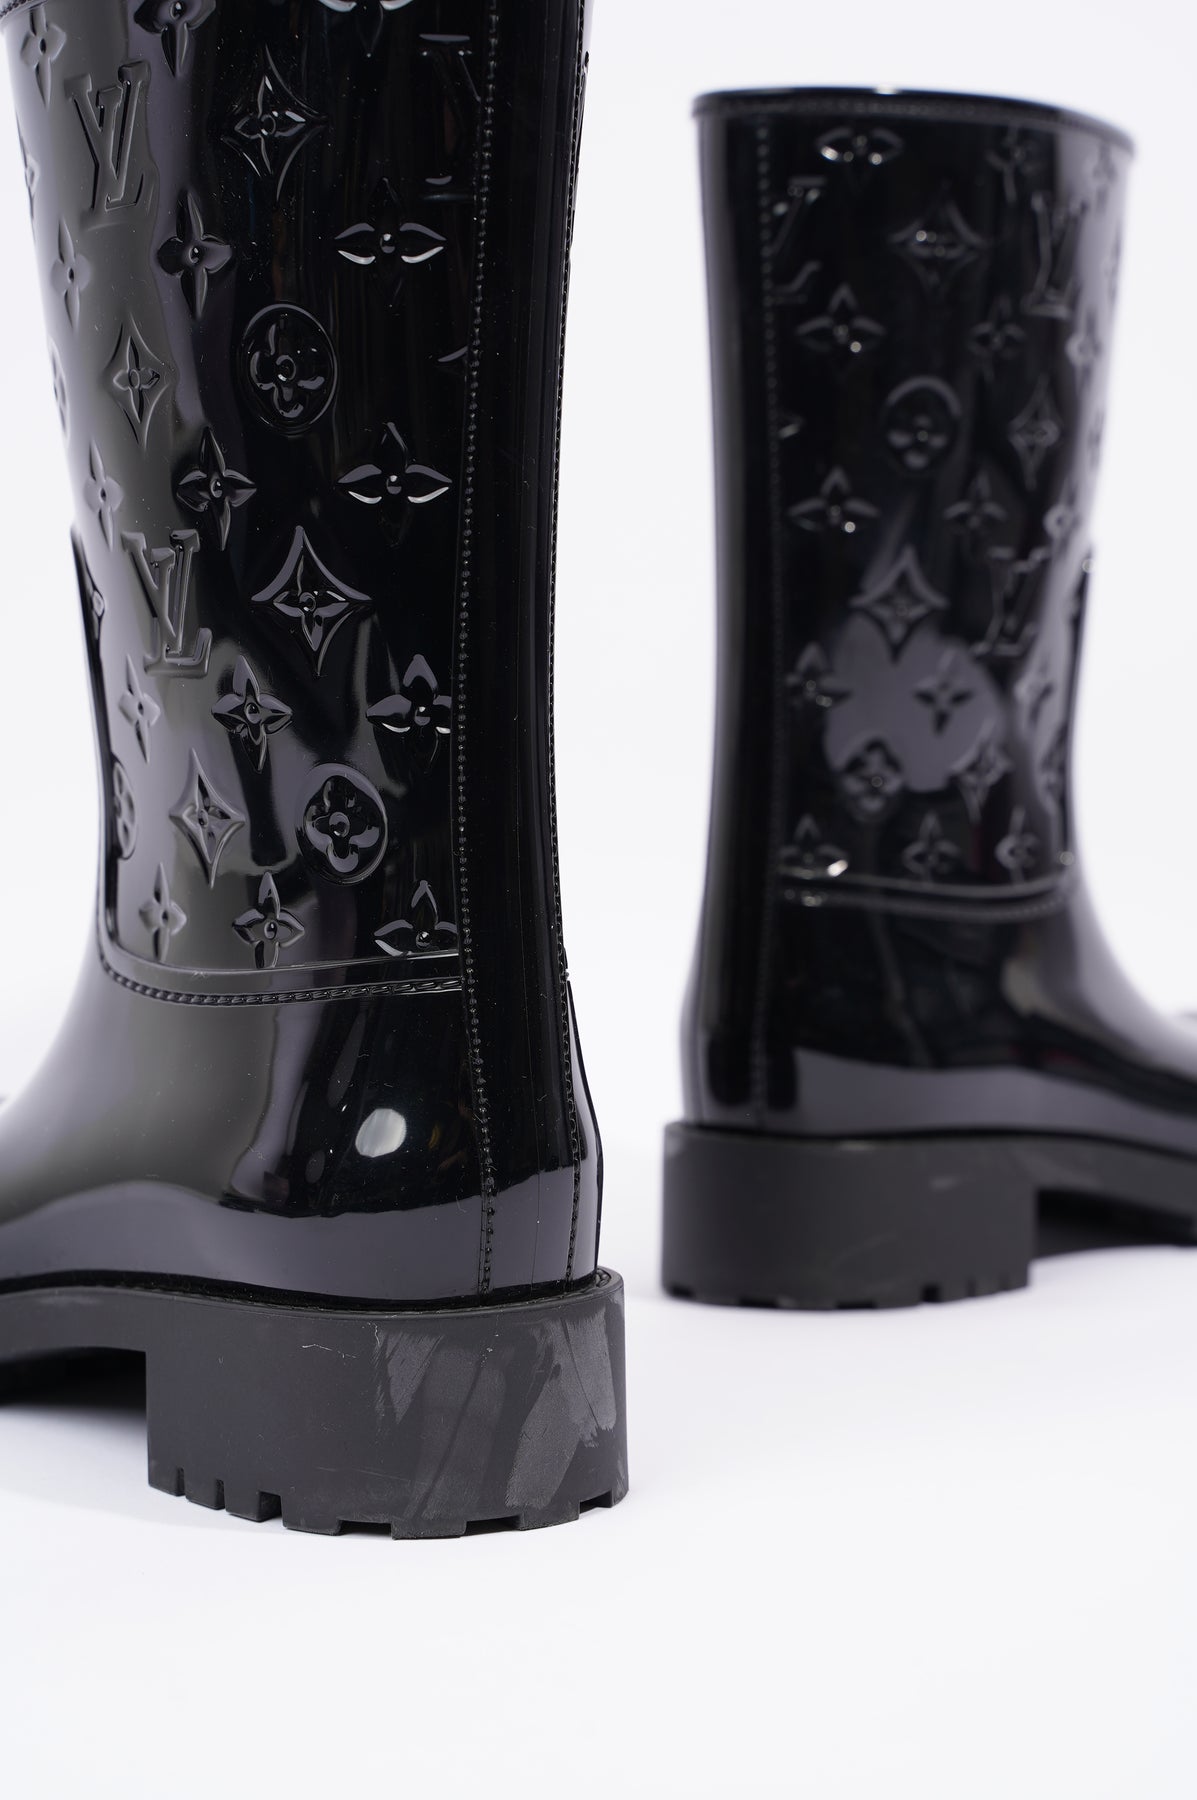 Drops wellington boots Louis Vuitton Black size 38 EU in Rubber